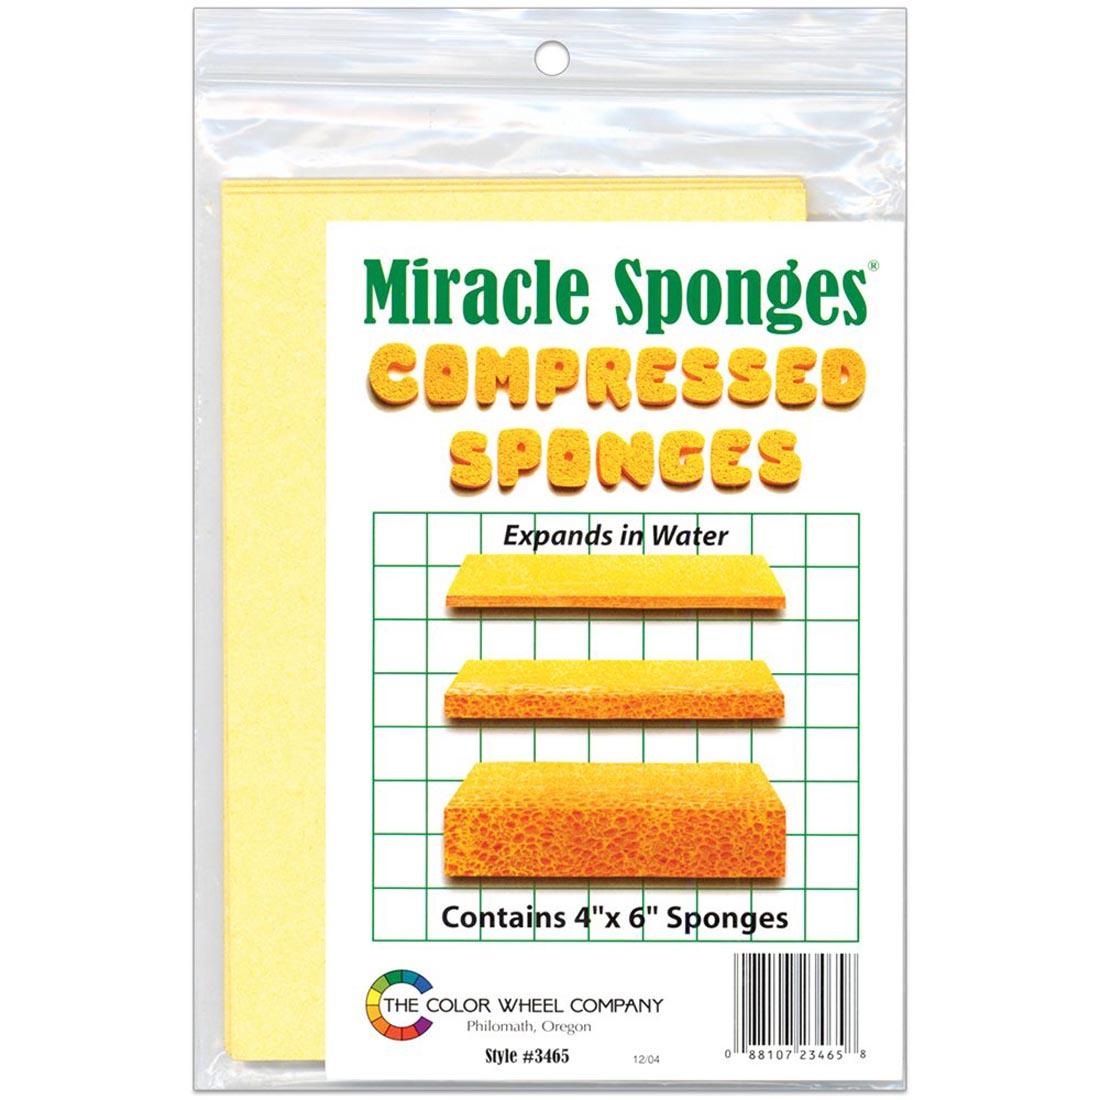 Package of Miracle Sponges